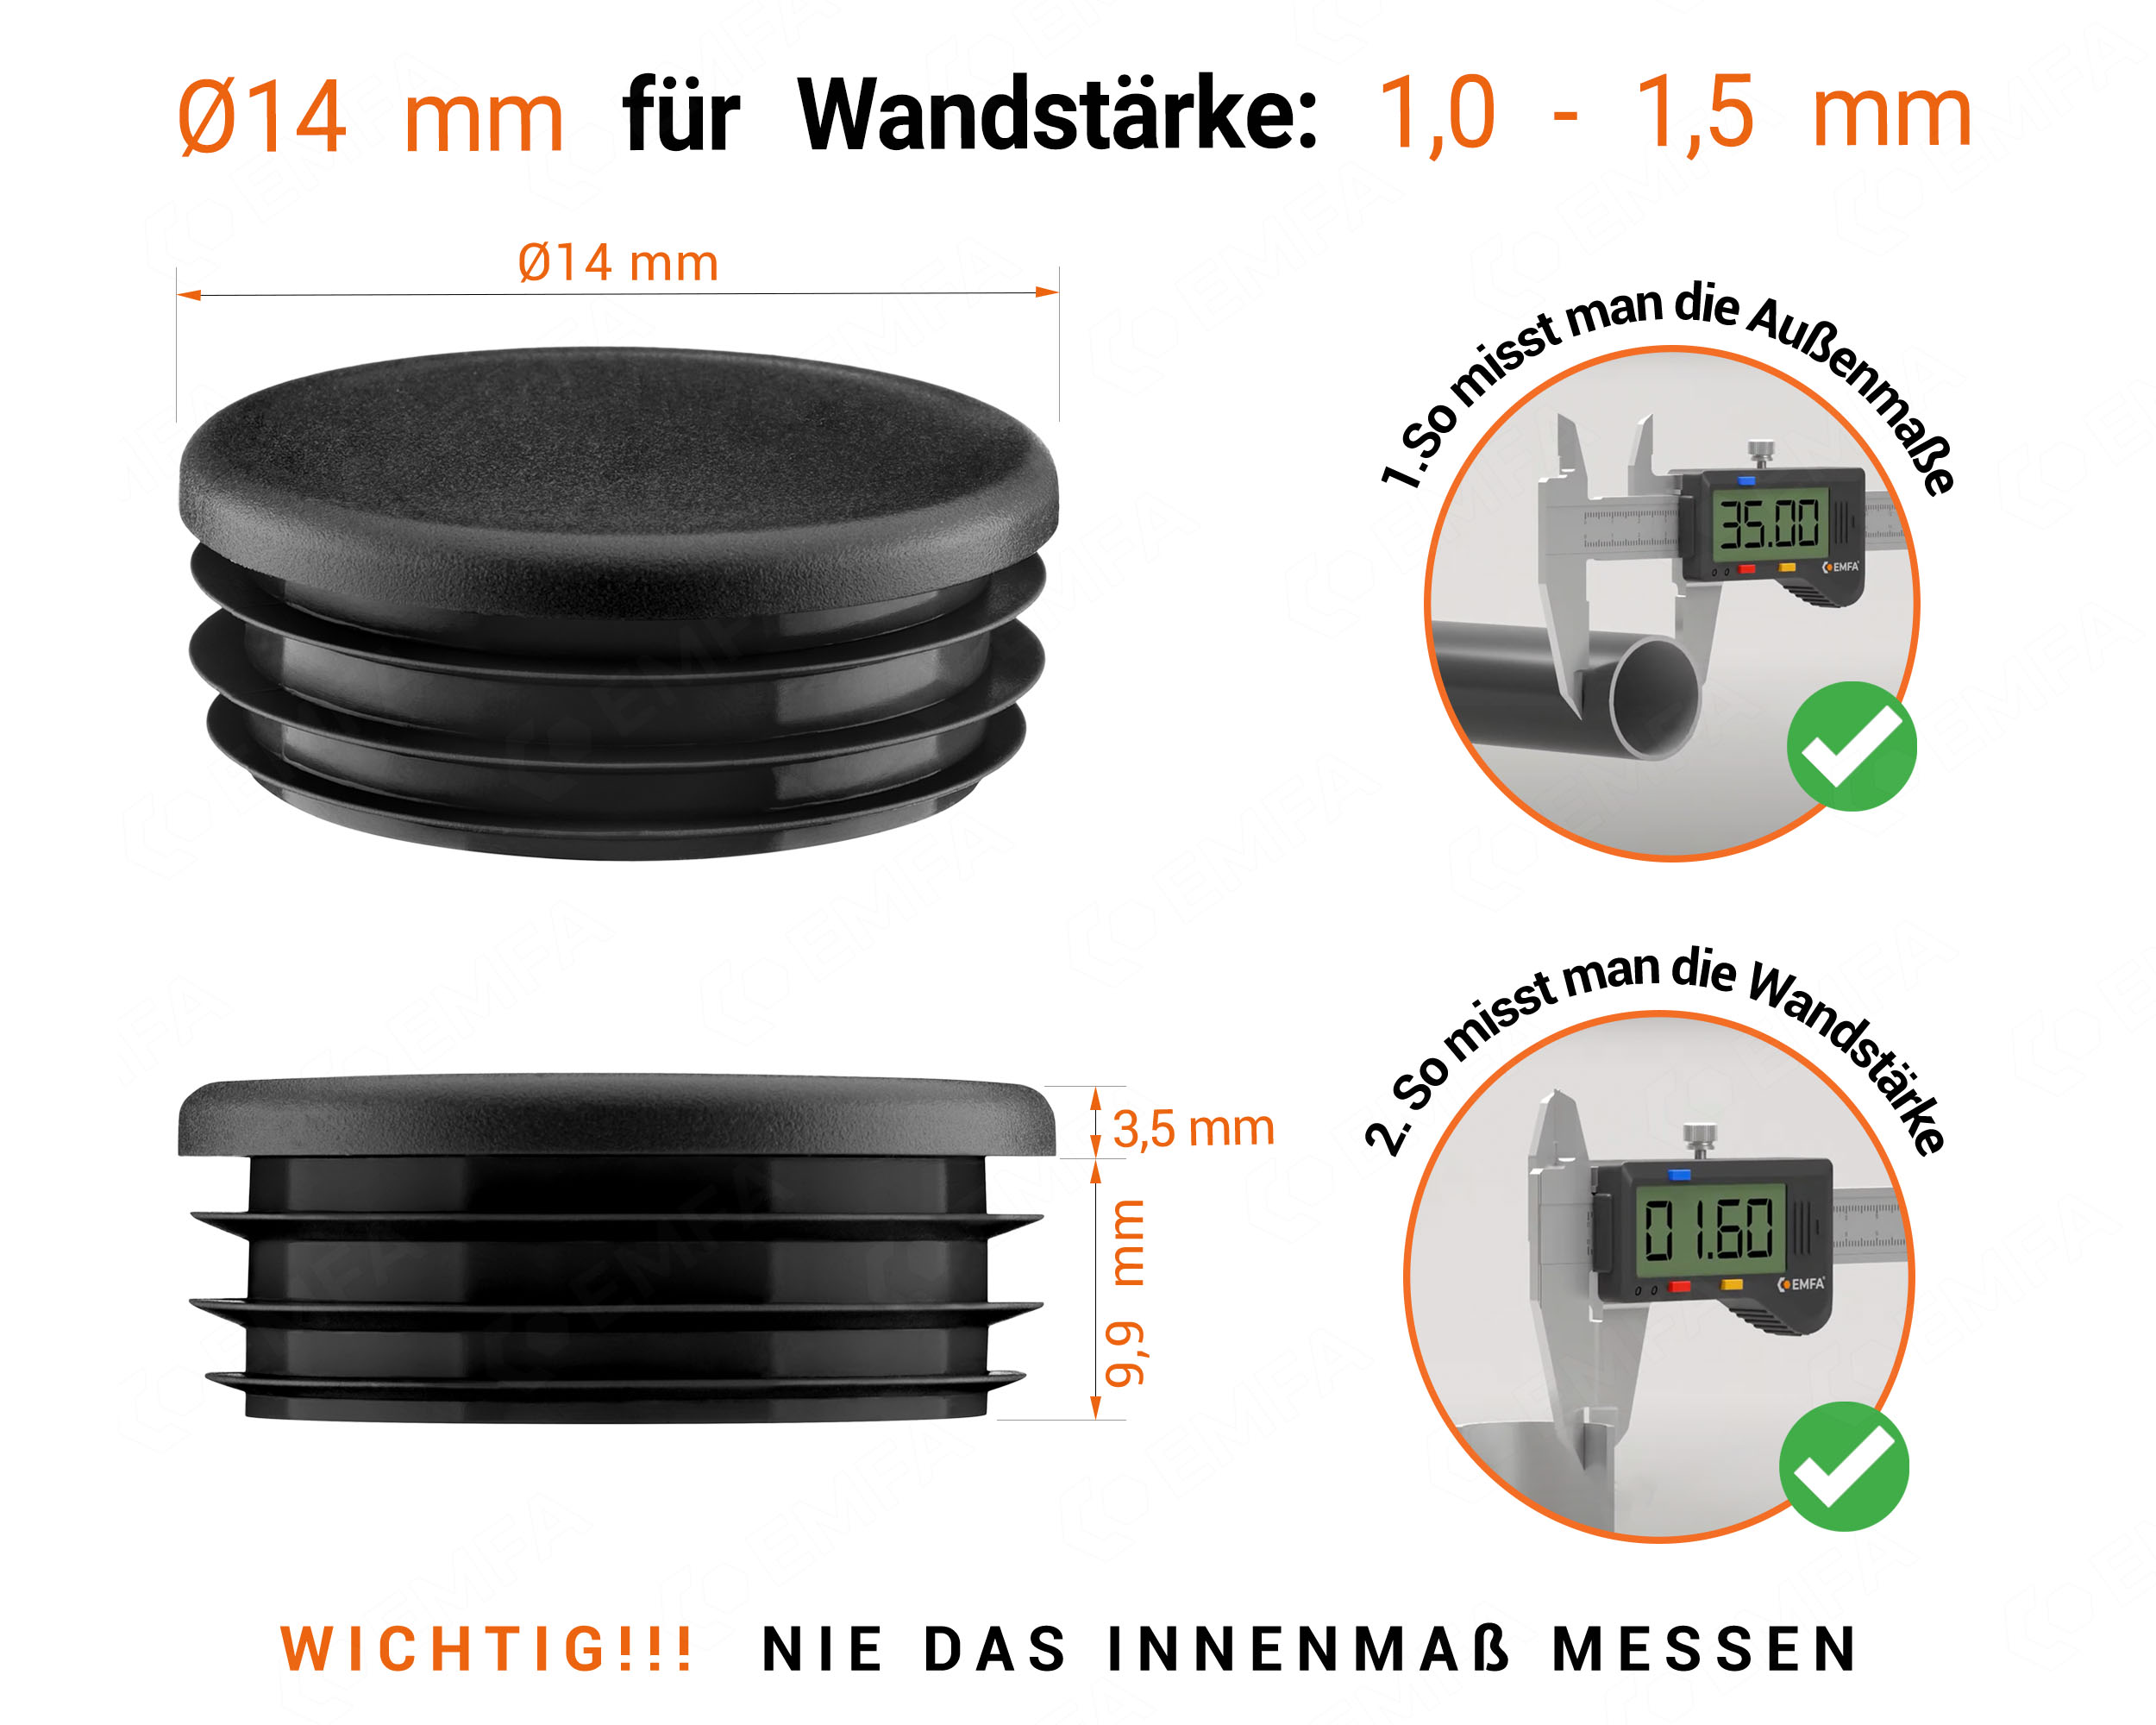 Schwarze Endkappe für Rundrohre in der Größe 14 mm mit technischen Abmessungen und Anleitung für korrekte Messung